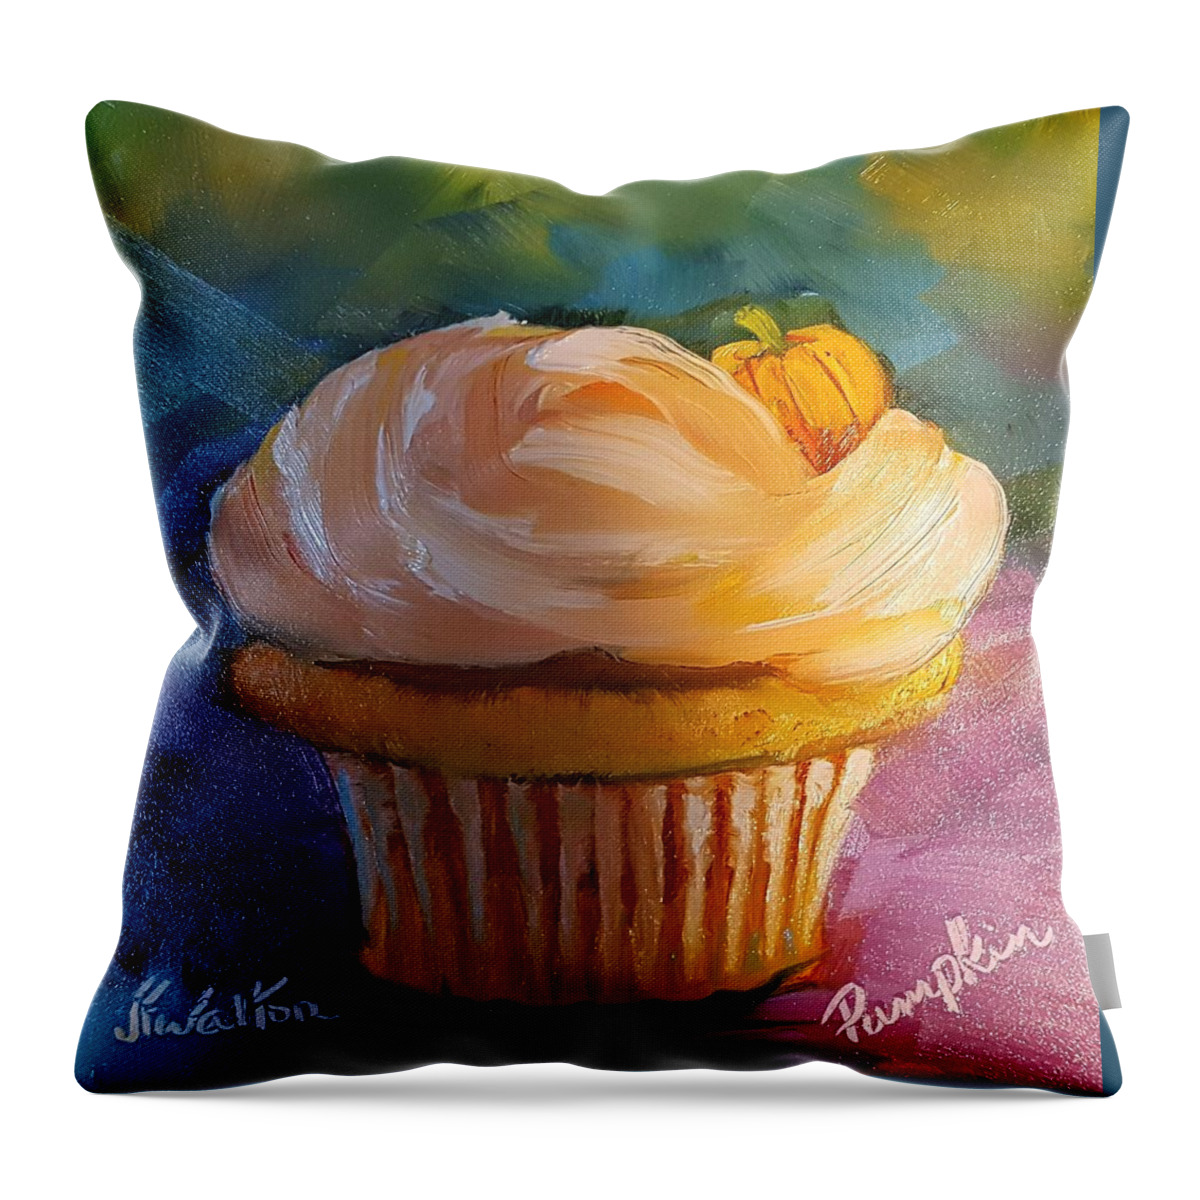 Pumpkin. Cupcake Throw Pillow featuring the painting Pumpkin Cupcake by Judy Fischer Walton